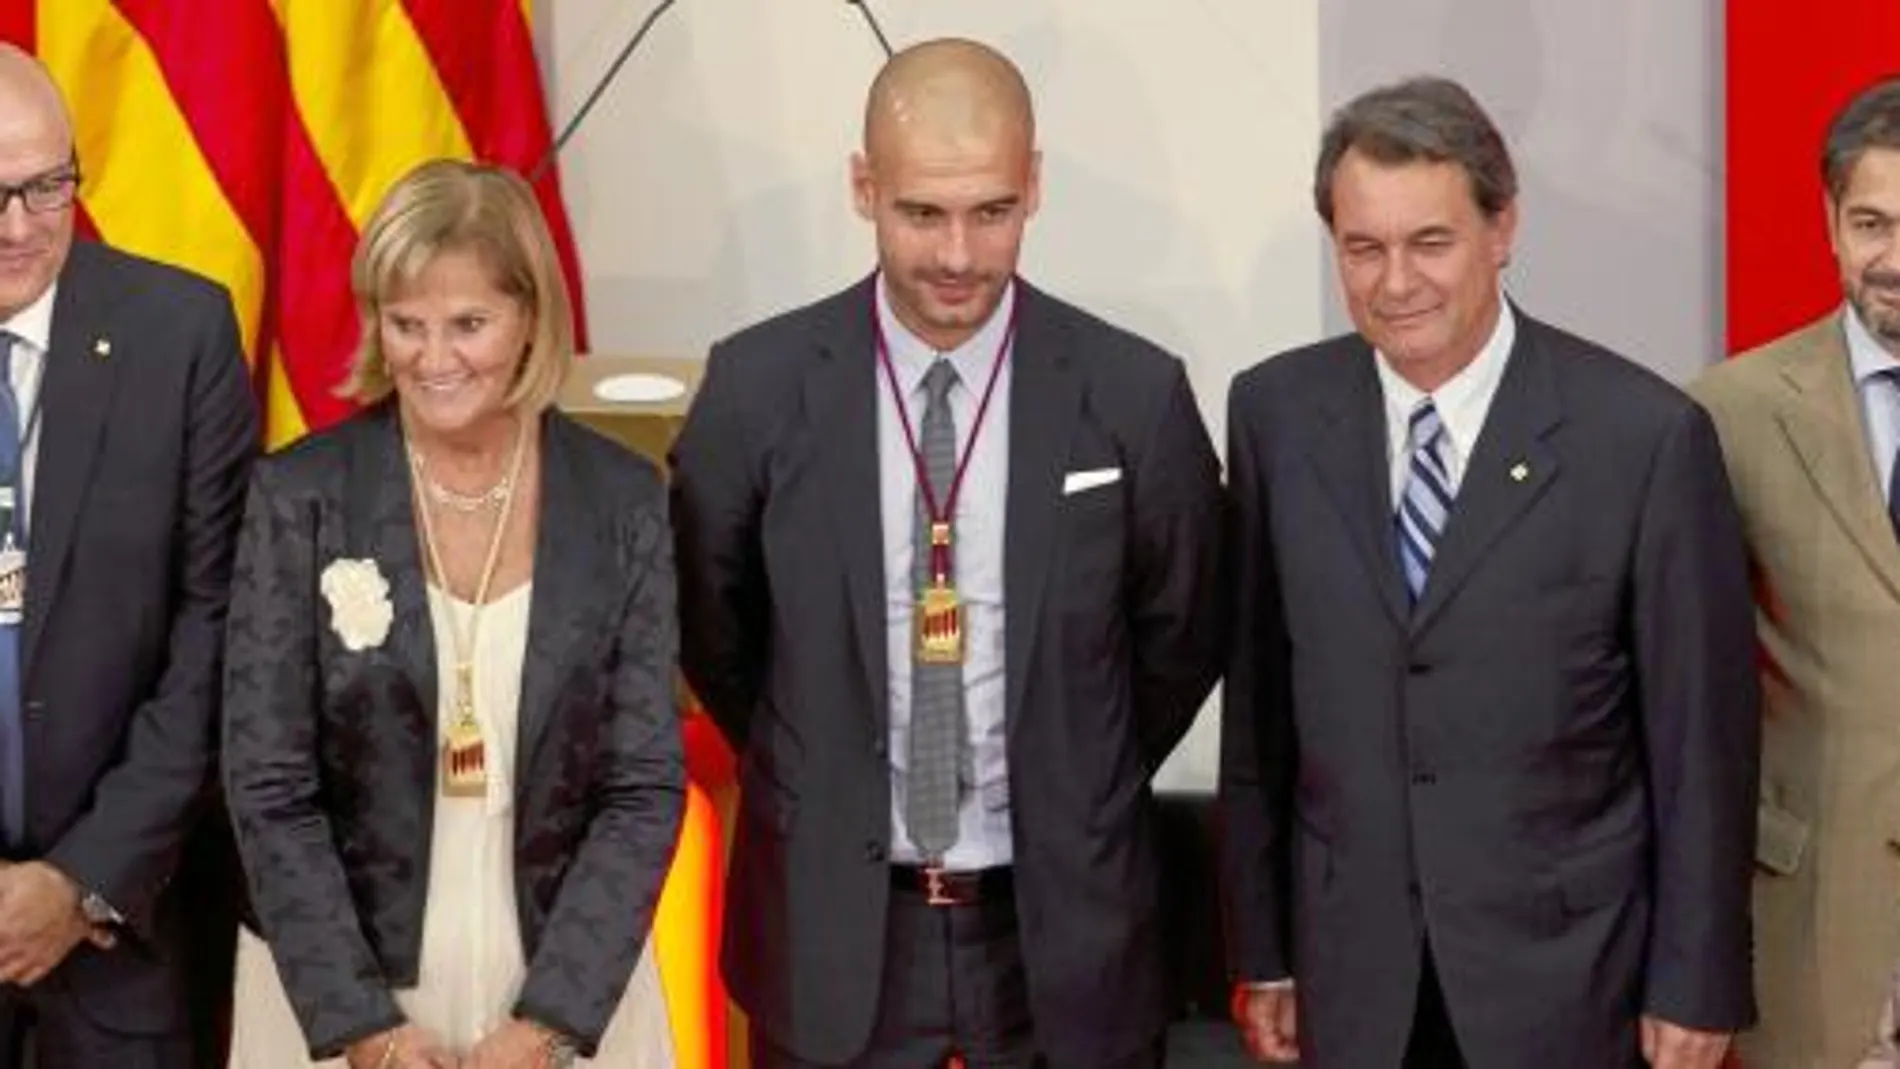 La Diada institucional arrancó ayer con la entrega de la Medalla de Honor del Parlament al entrenador del Barça, Josep Guardiola. El acto no tenía por qué ser político, pero los nacionalistas quieren aprovechar el 11-S para reivindicar la inmersión lingüí